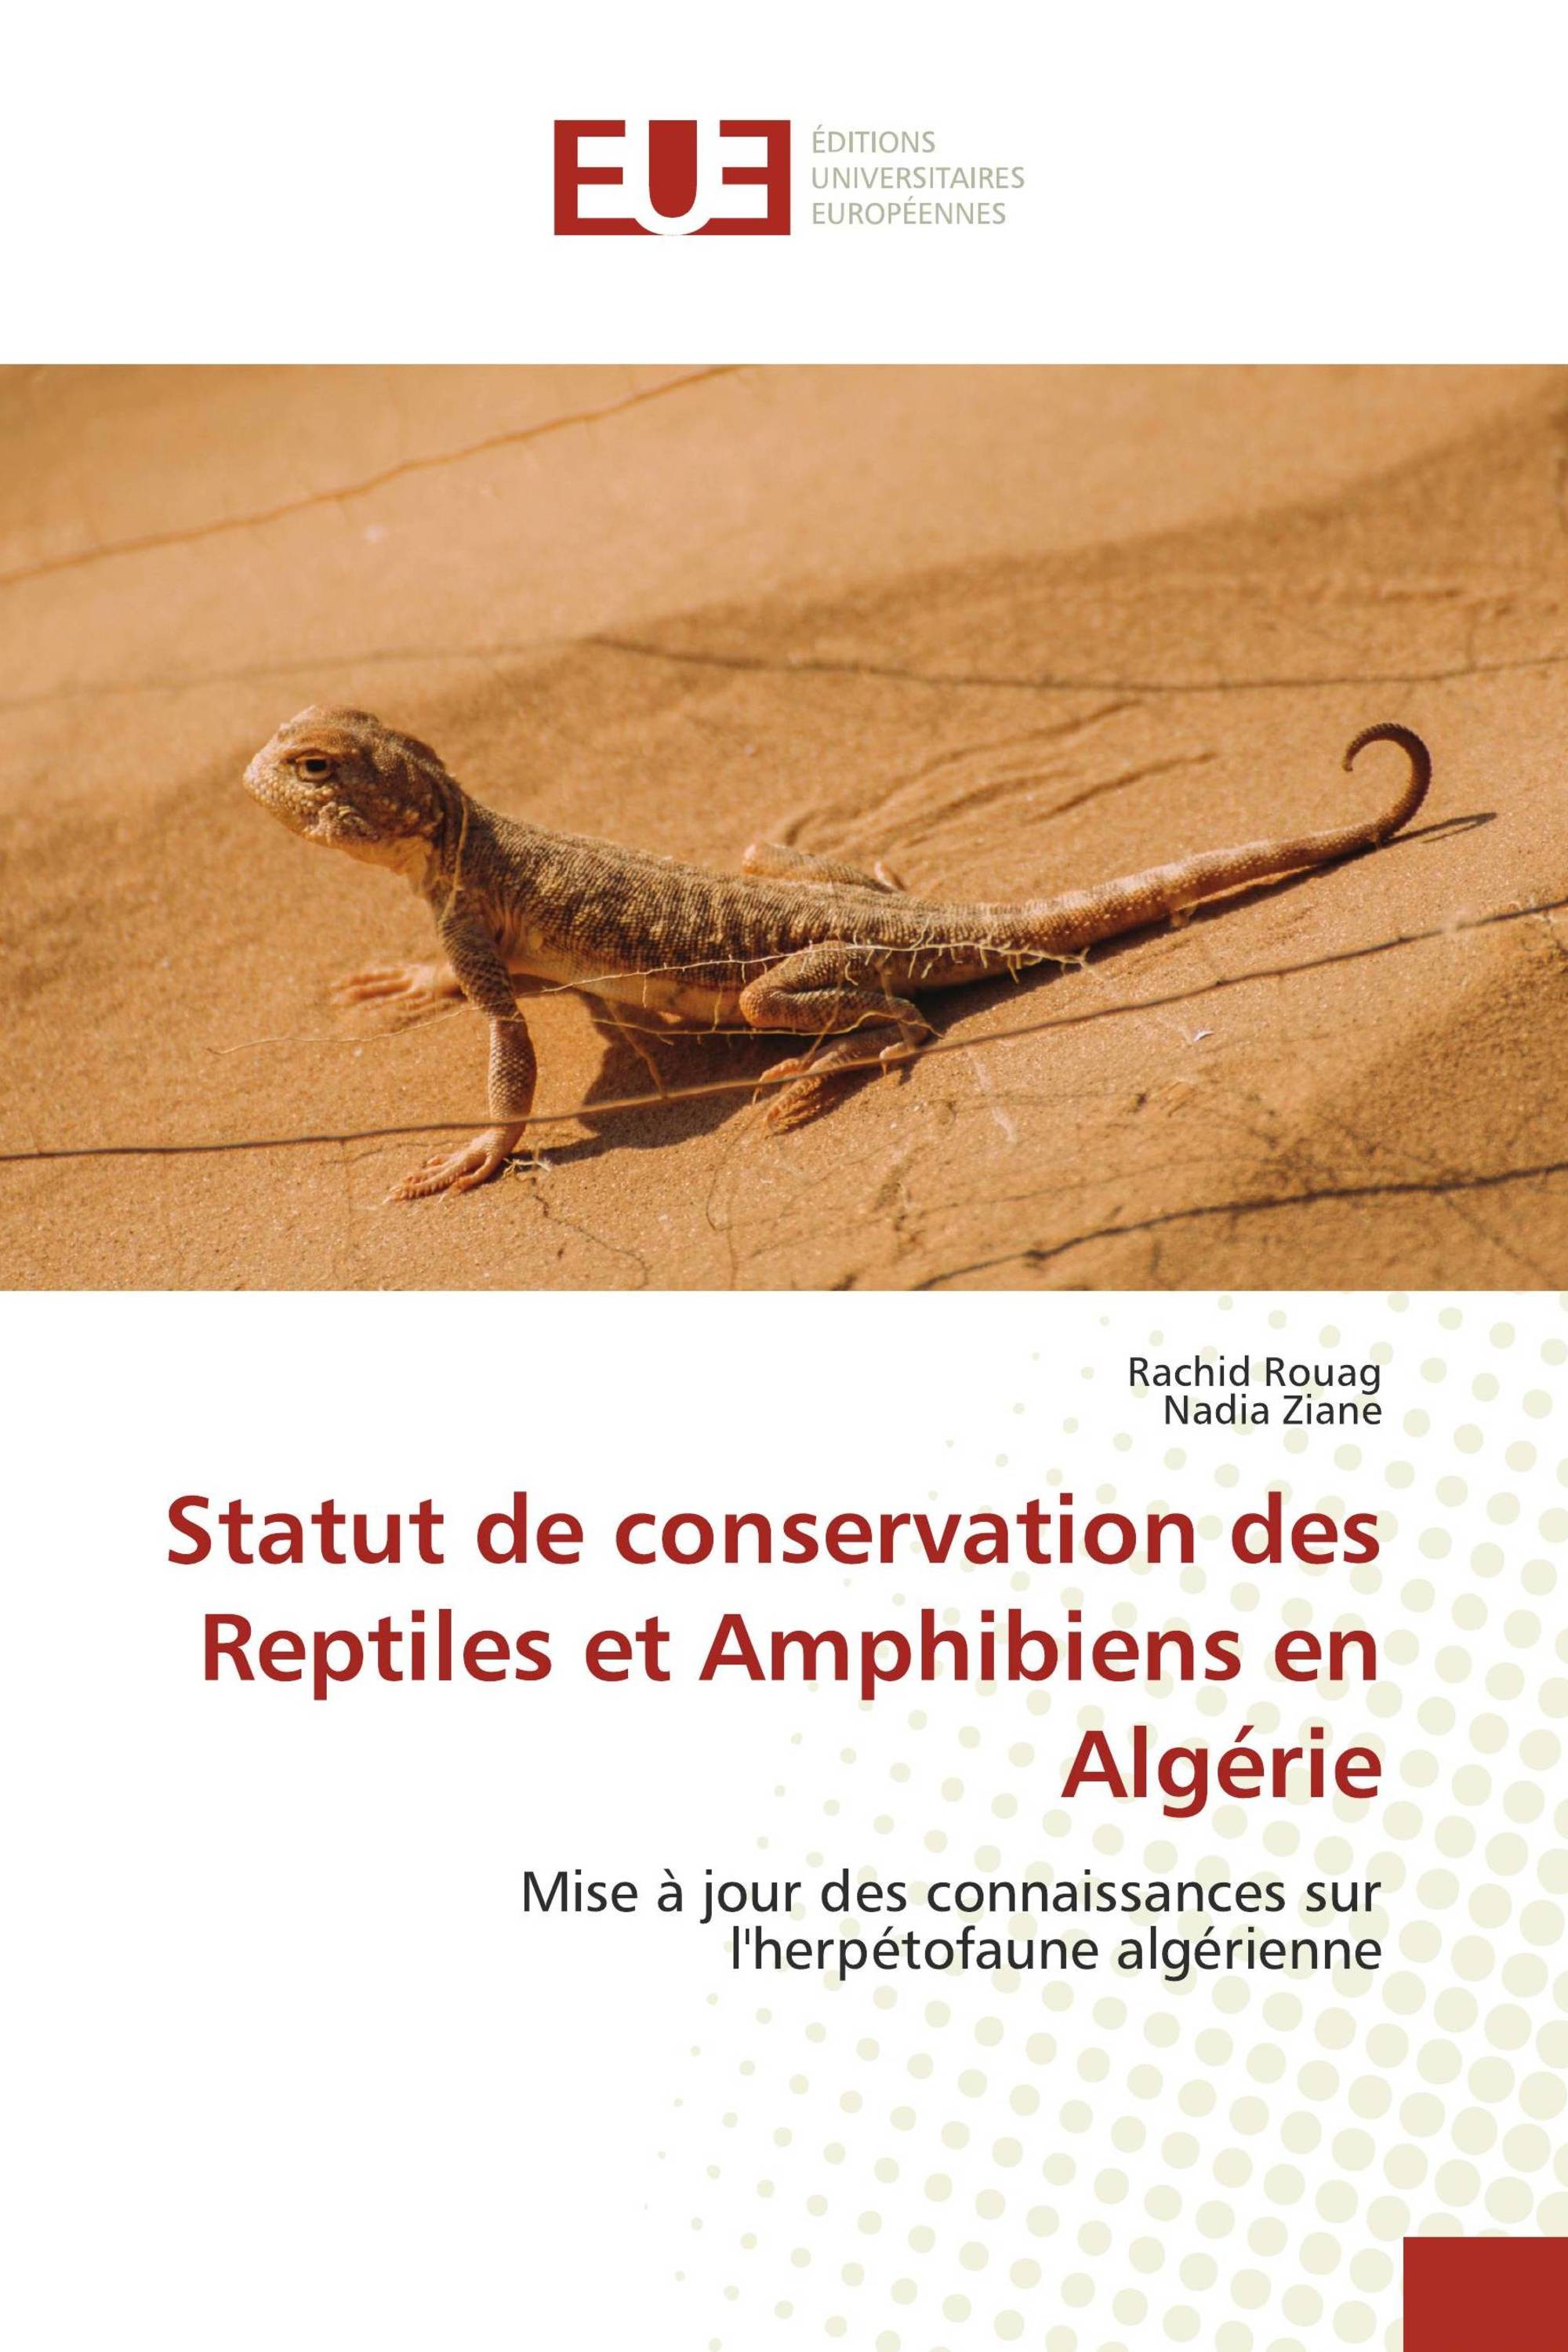 Statut de conservation des Reptiles et Amphibiens en Algérie